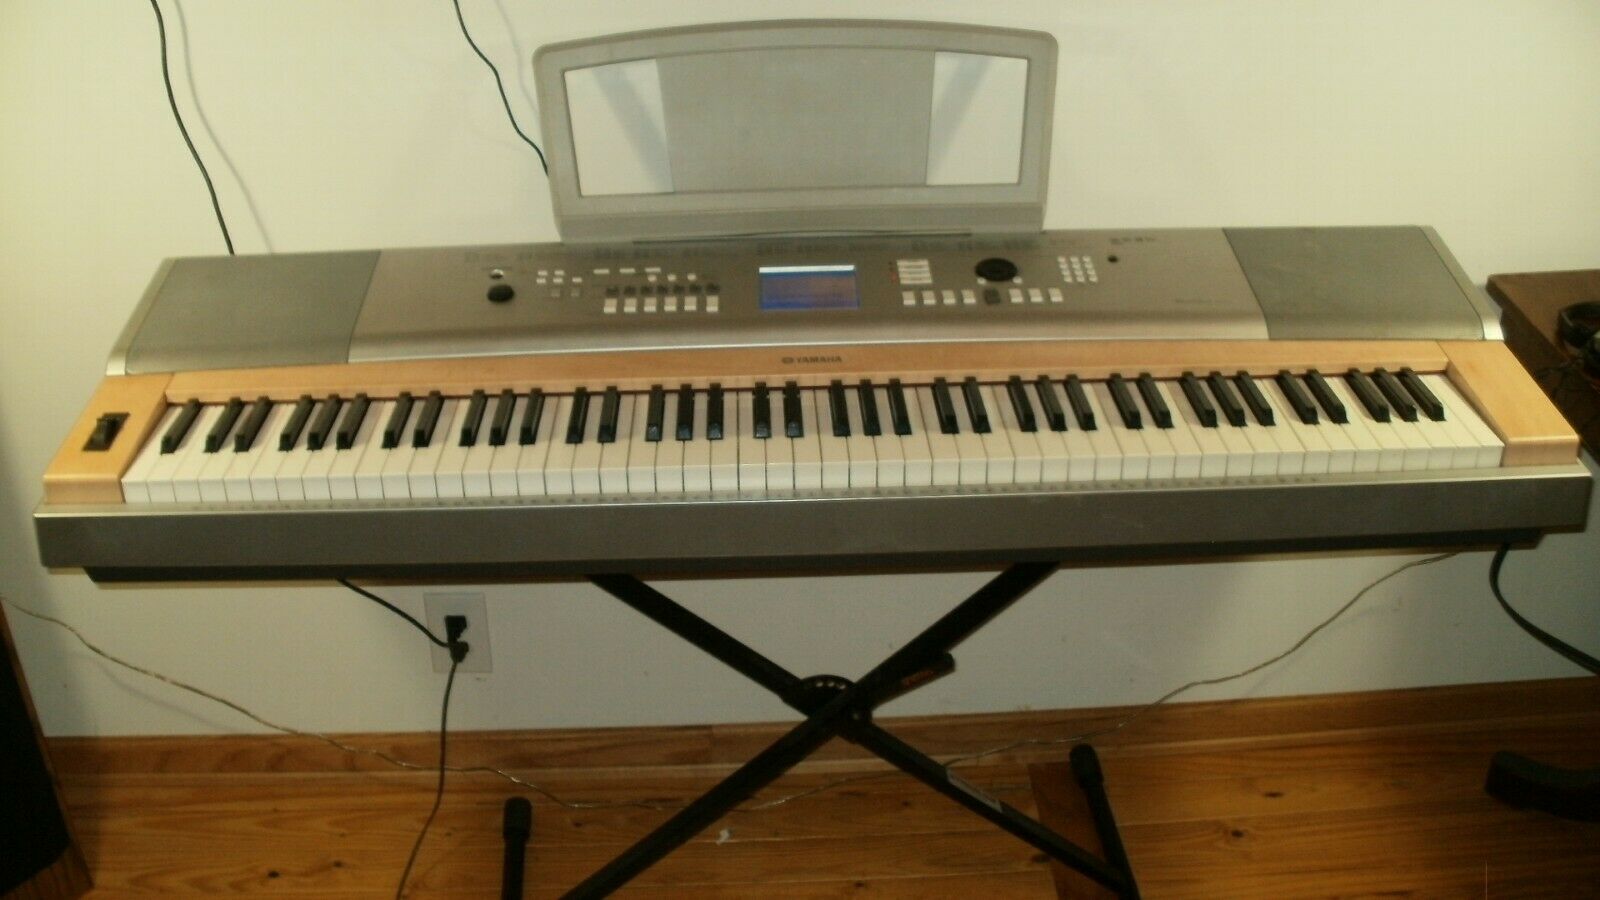 Yamaha Dgx 620 Piano Keyboard Synthesizer